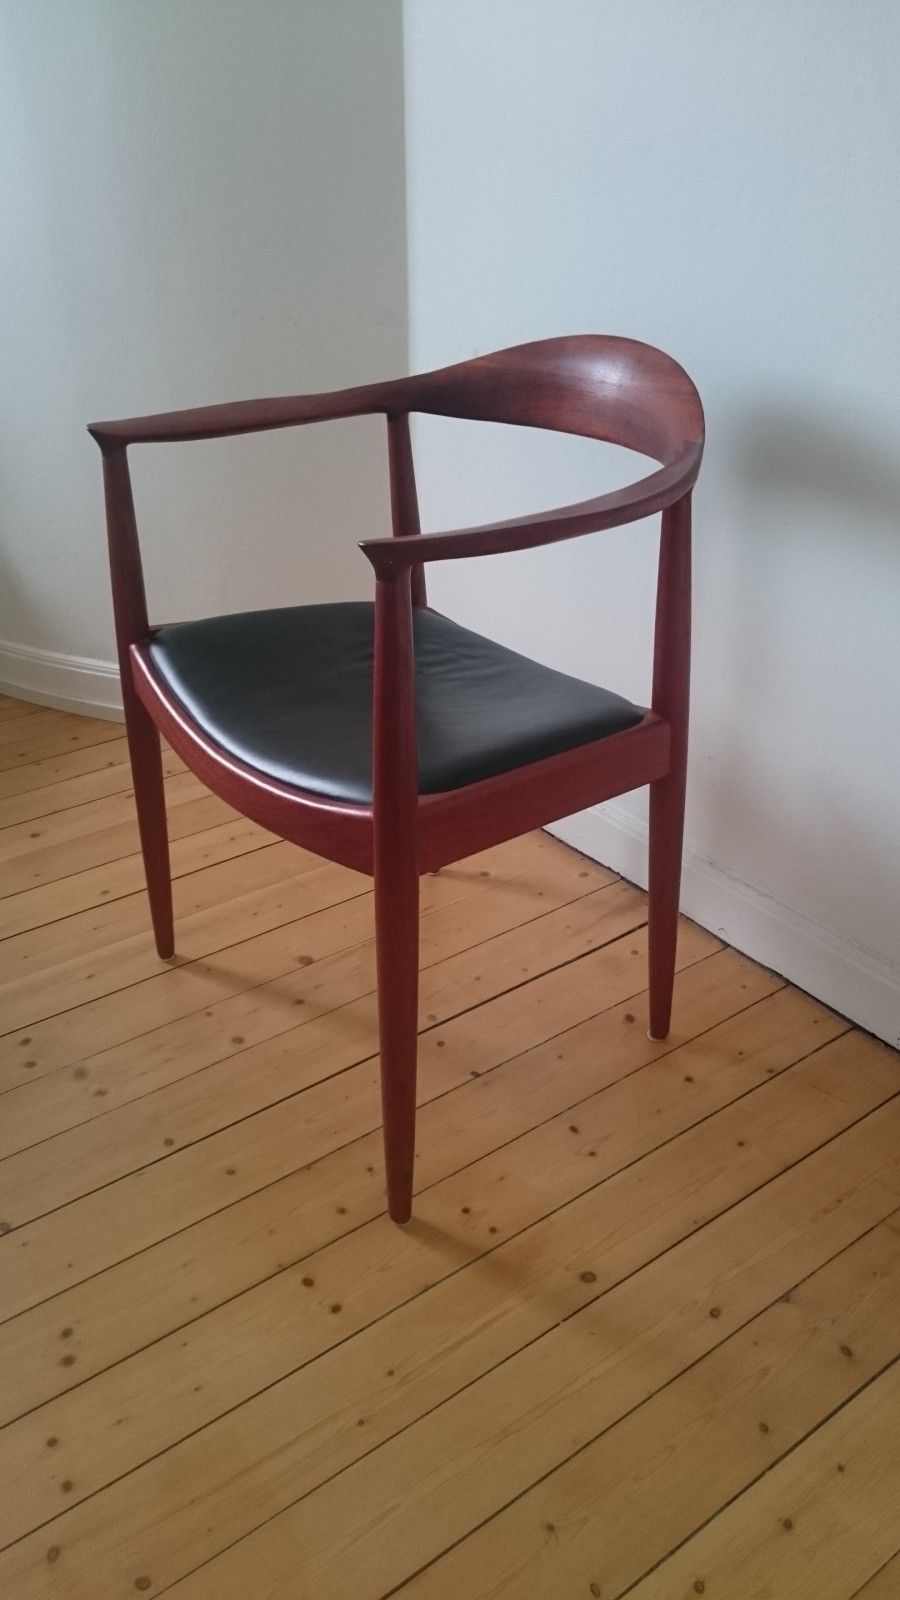 Stol – kopia av Wegner's The Chair